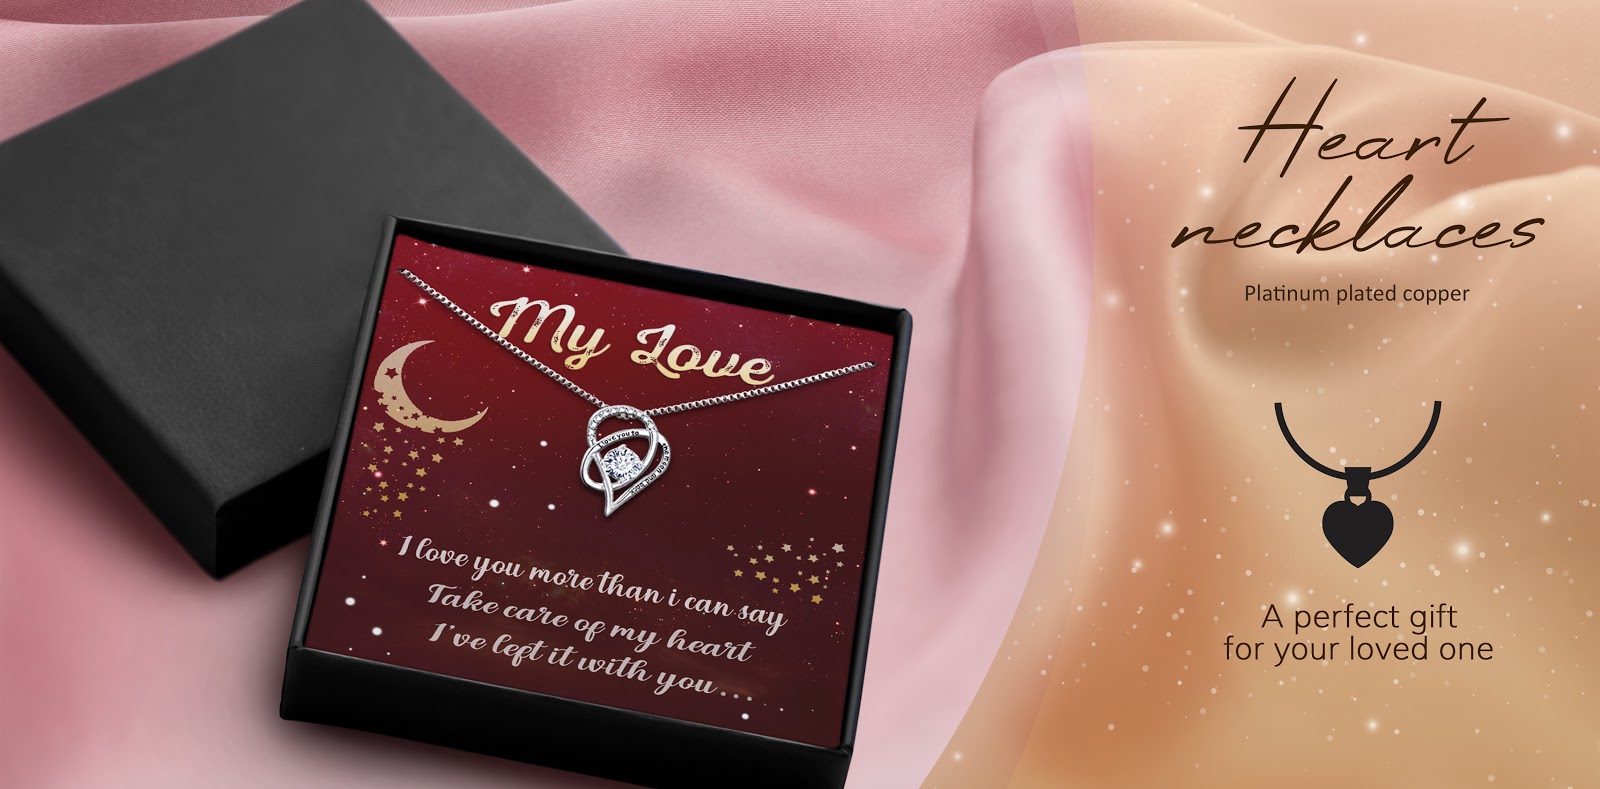 Heart necklace with box độc quyền của PrintBase phân phối với thông điệp ý nghĩa gửi tặng bạn gái/ vợ/ mẹ/ bà là món quà Valentine mà khách hàng của bạn có thể mua tặng những người thân yêu.